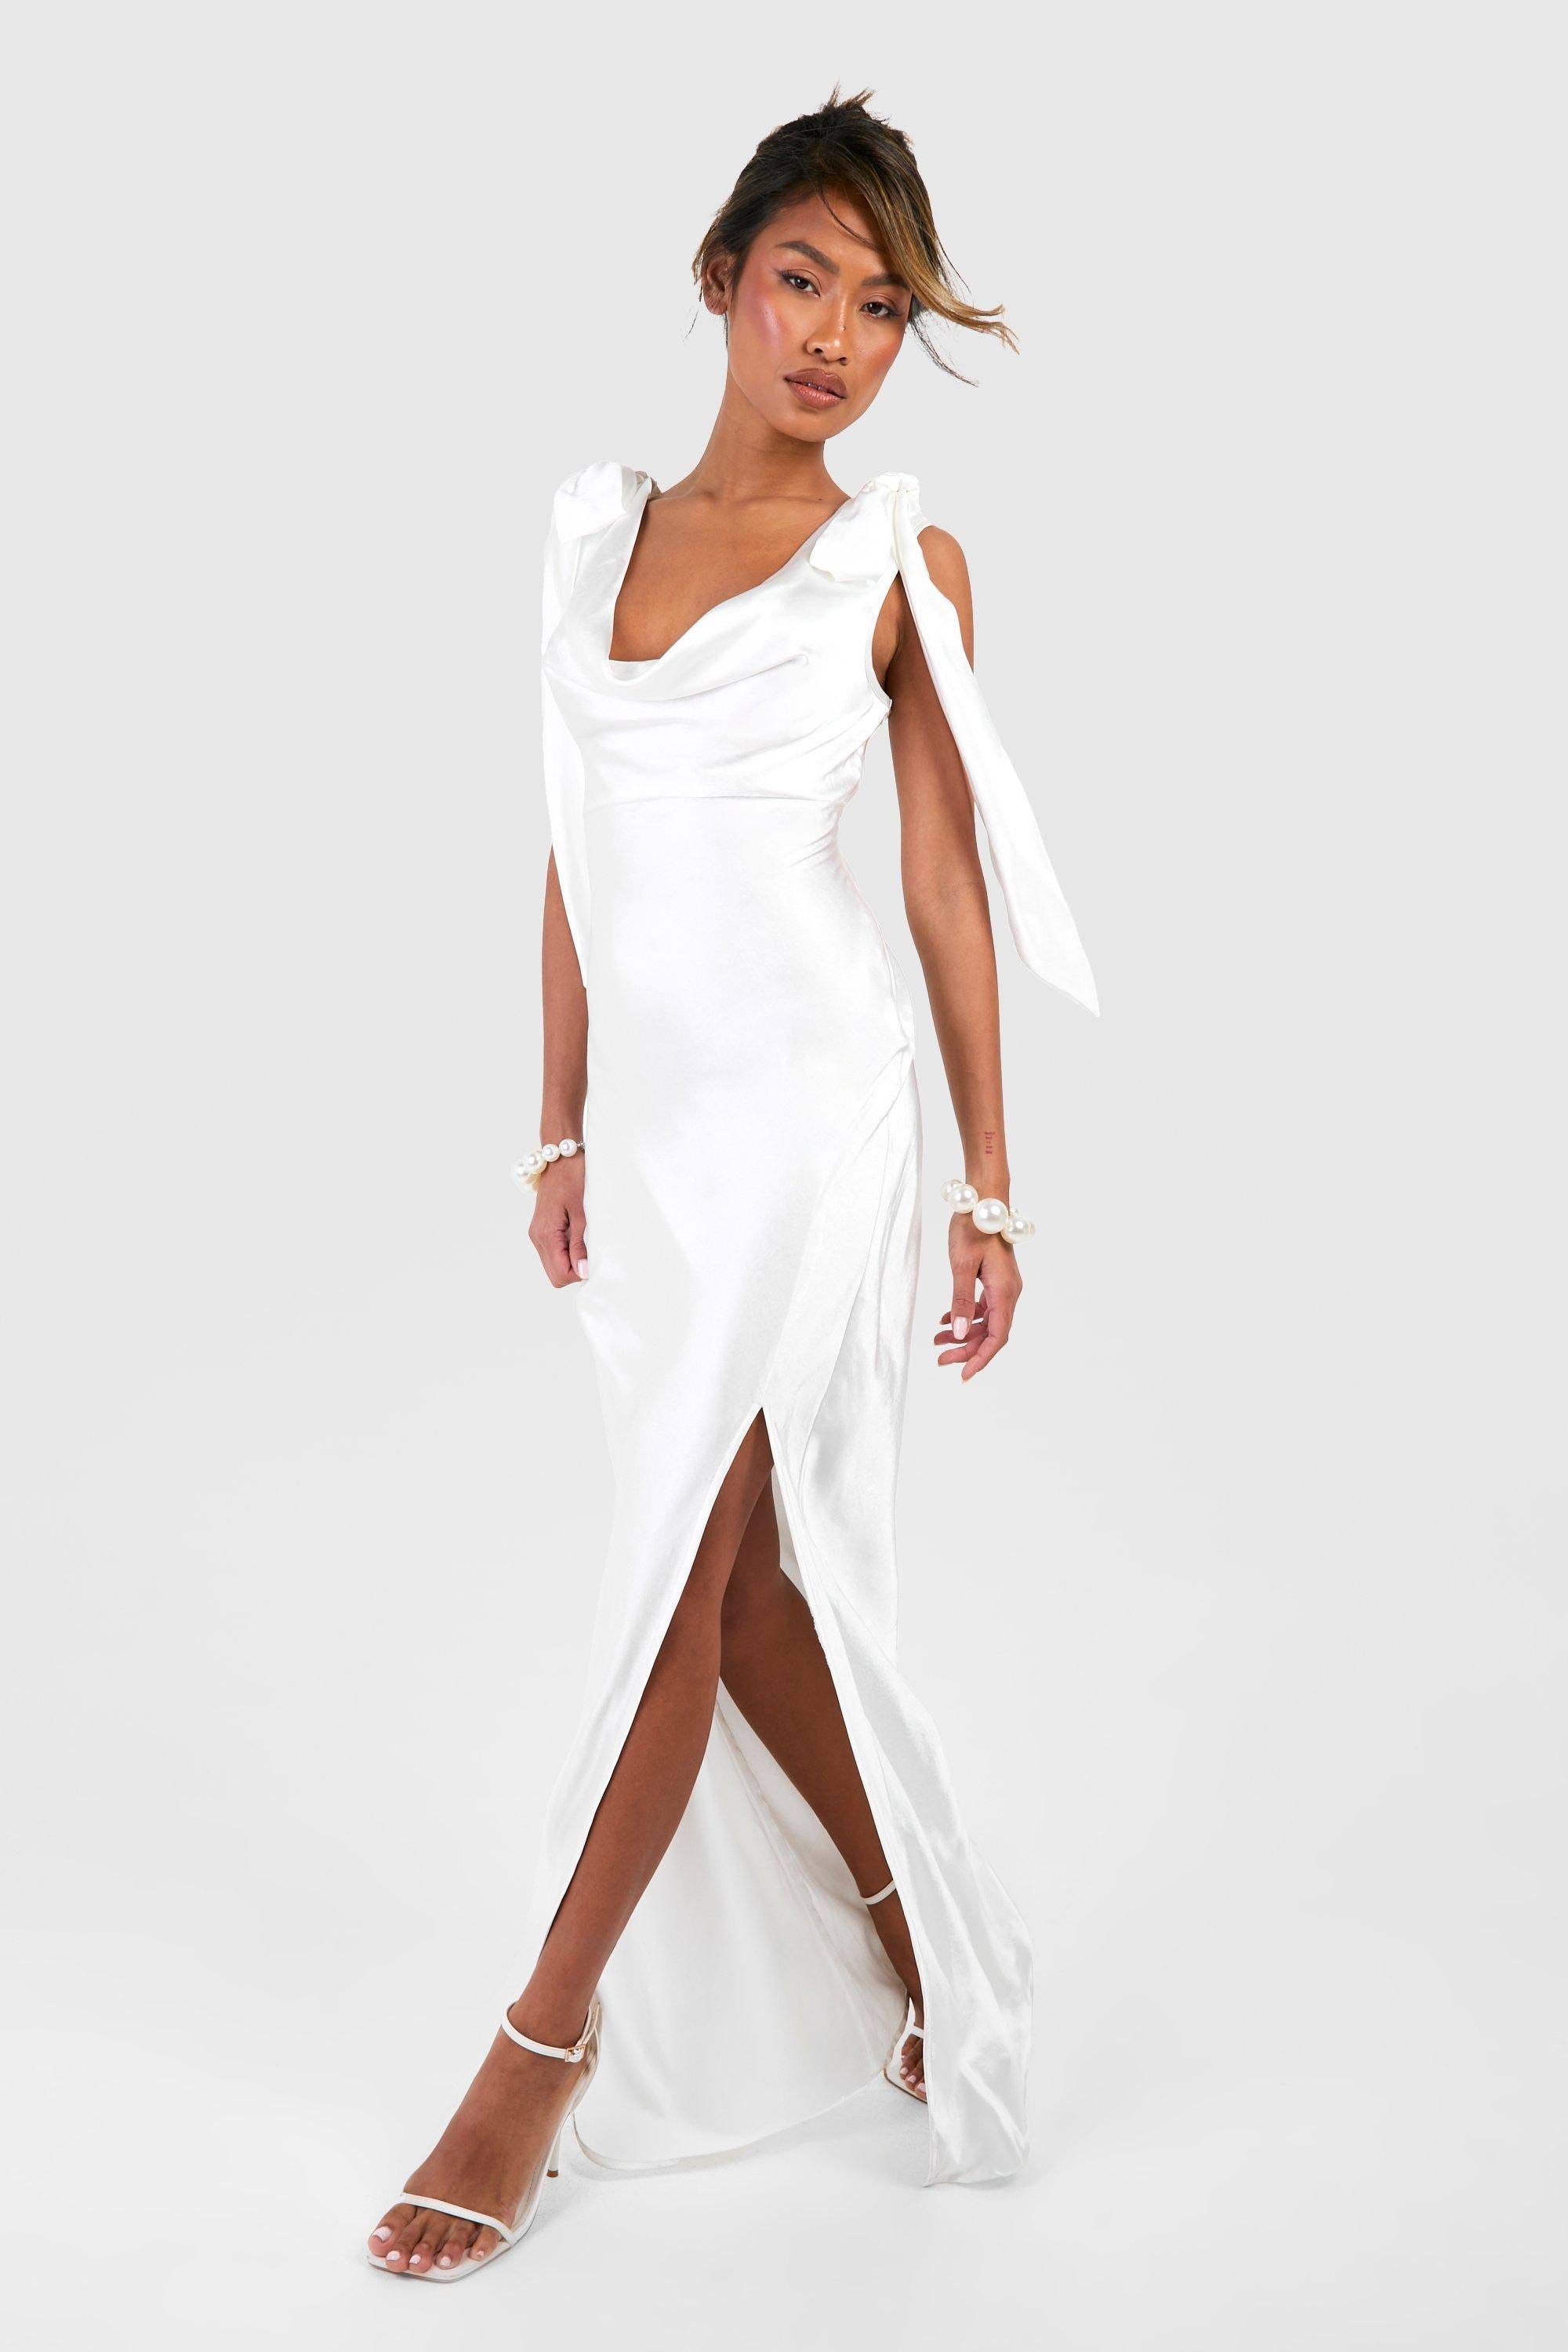 Stylish Maxi Slip Dress in White Satin | Image